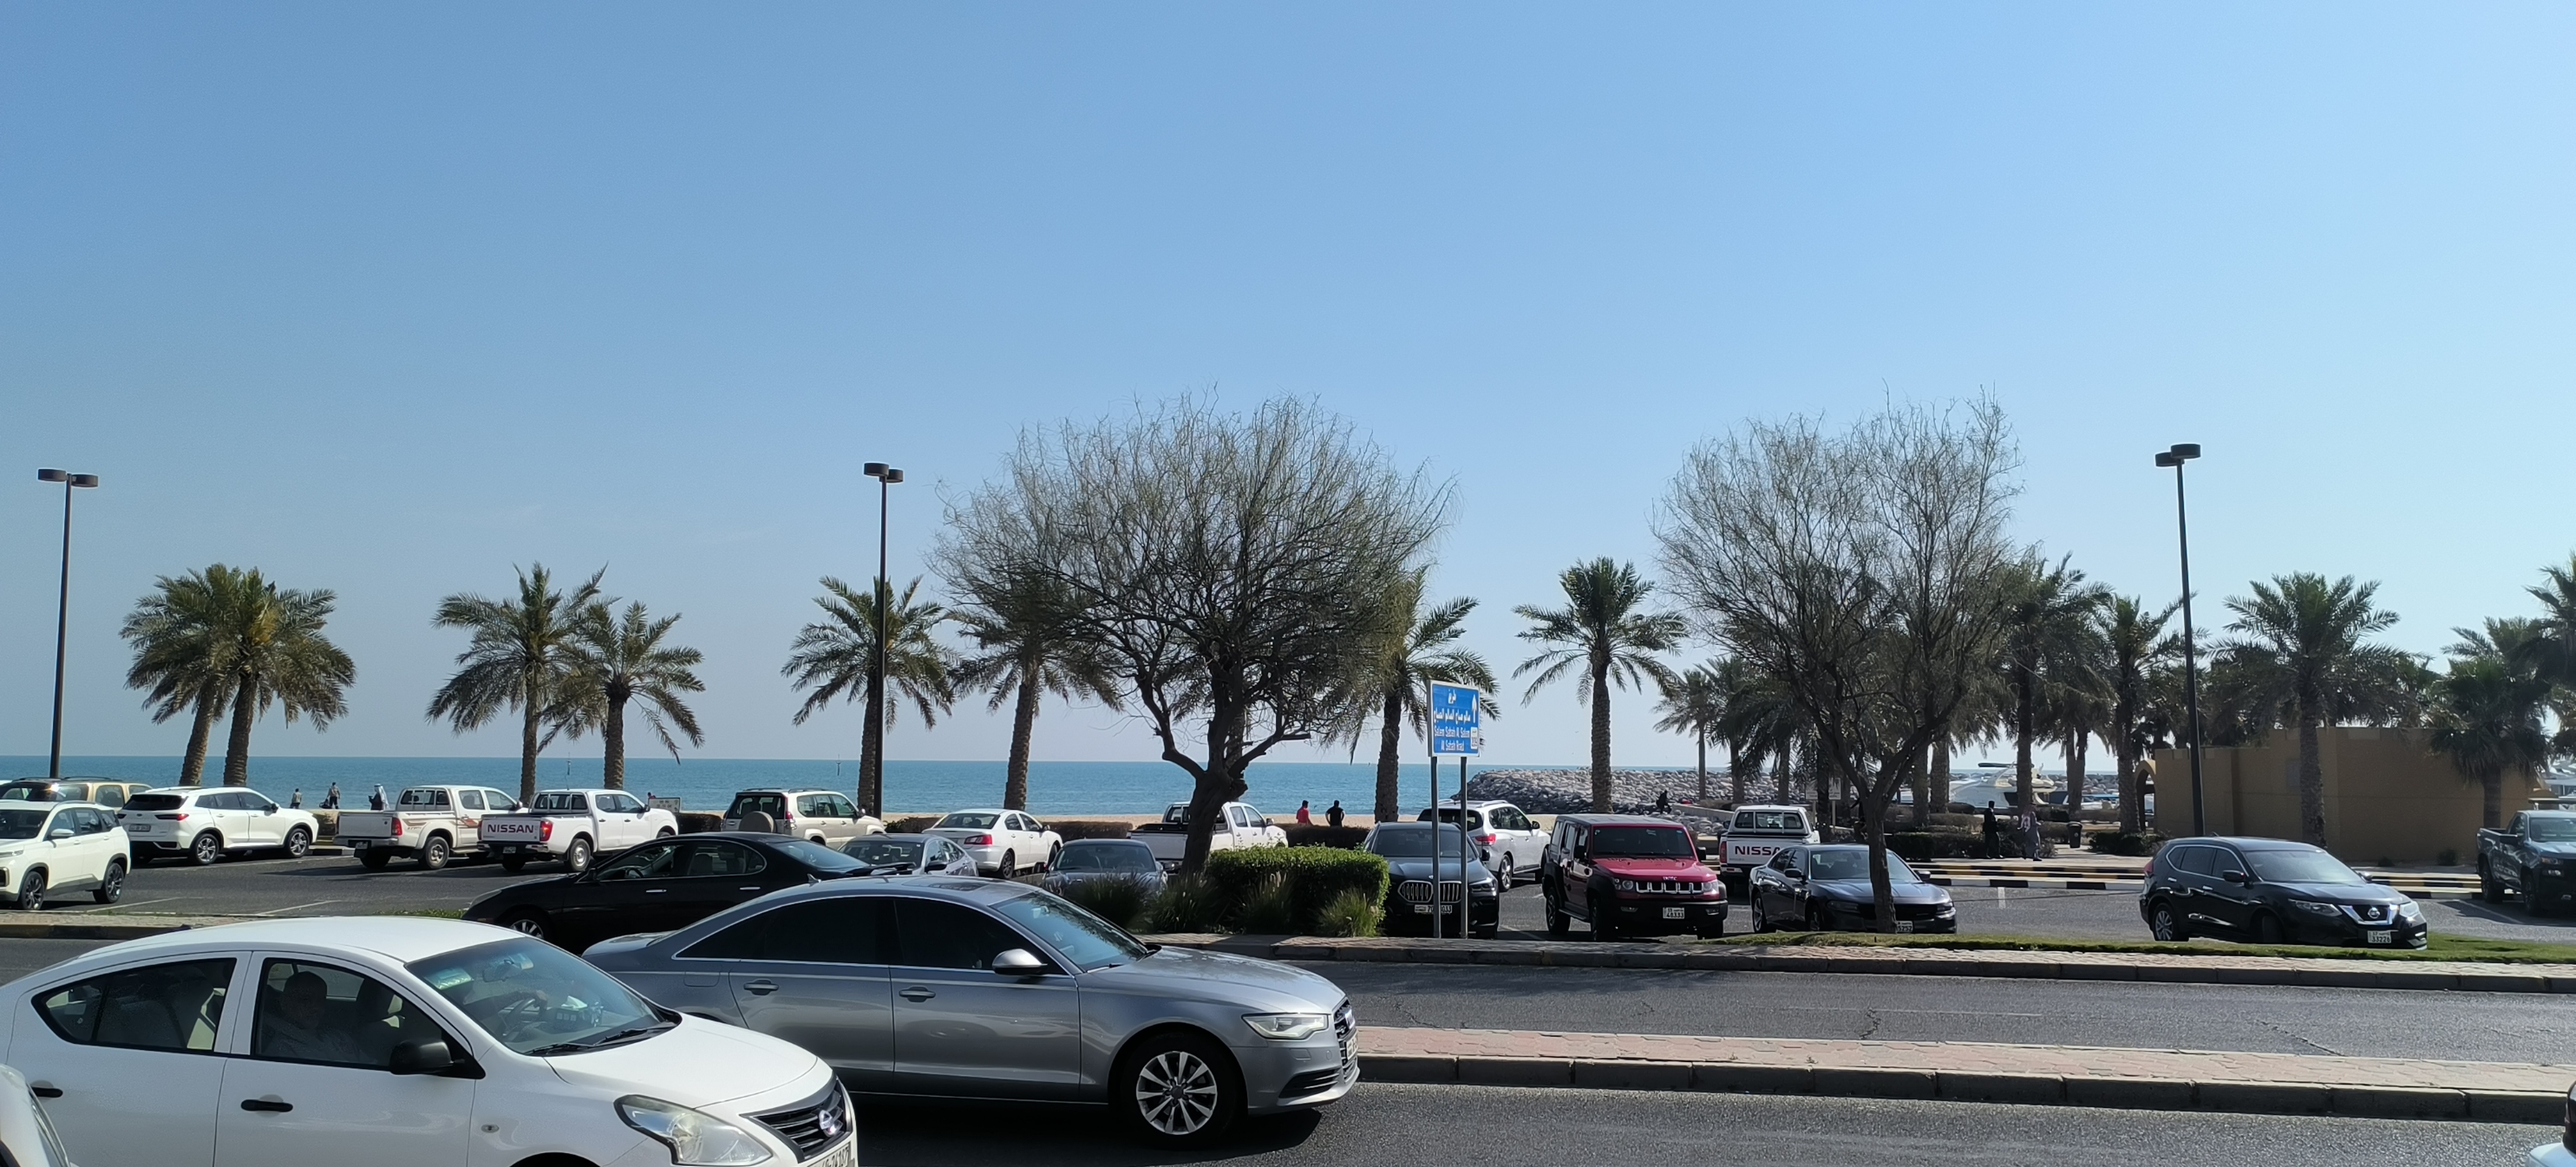 科威特曼卡夫海滩，优质海滩资源丰富多彩，优质酒店林立。游客络绎不绝。